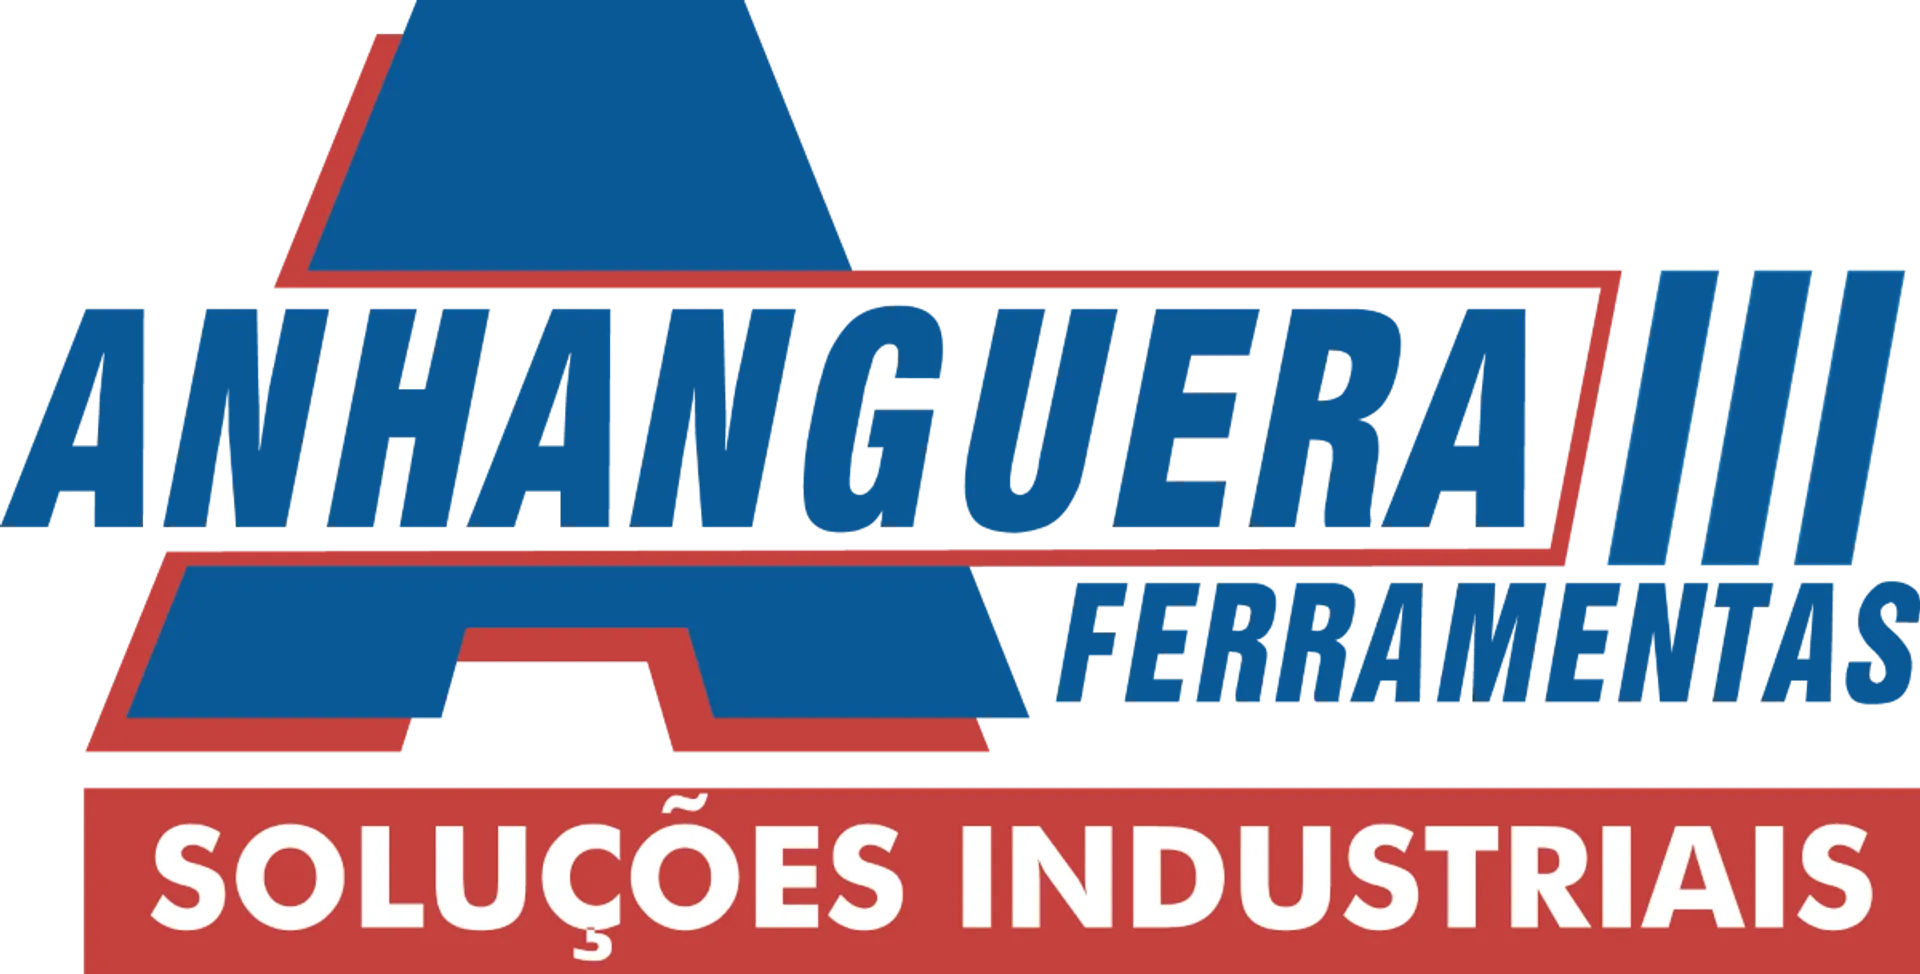 ANHANGUERA FERRAMENTAS logo